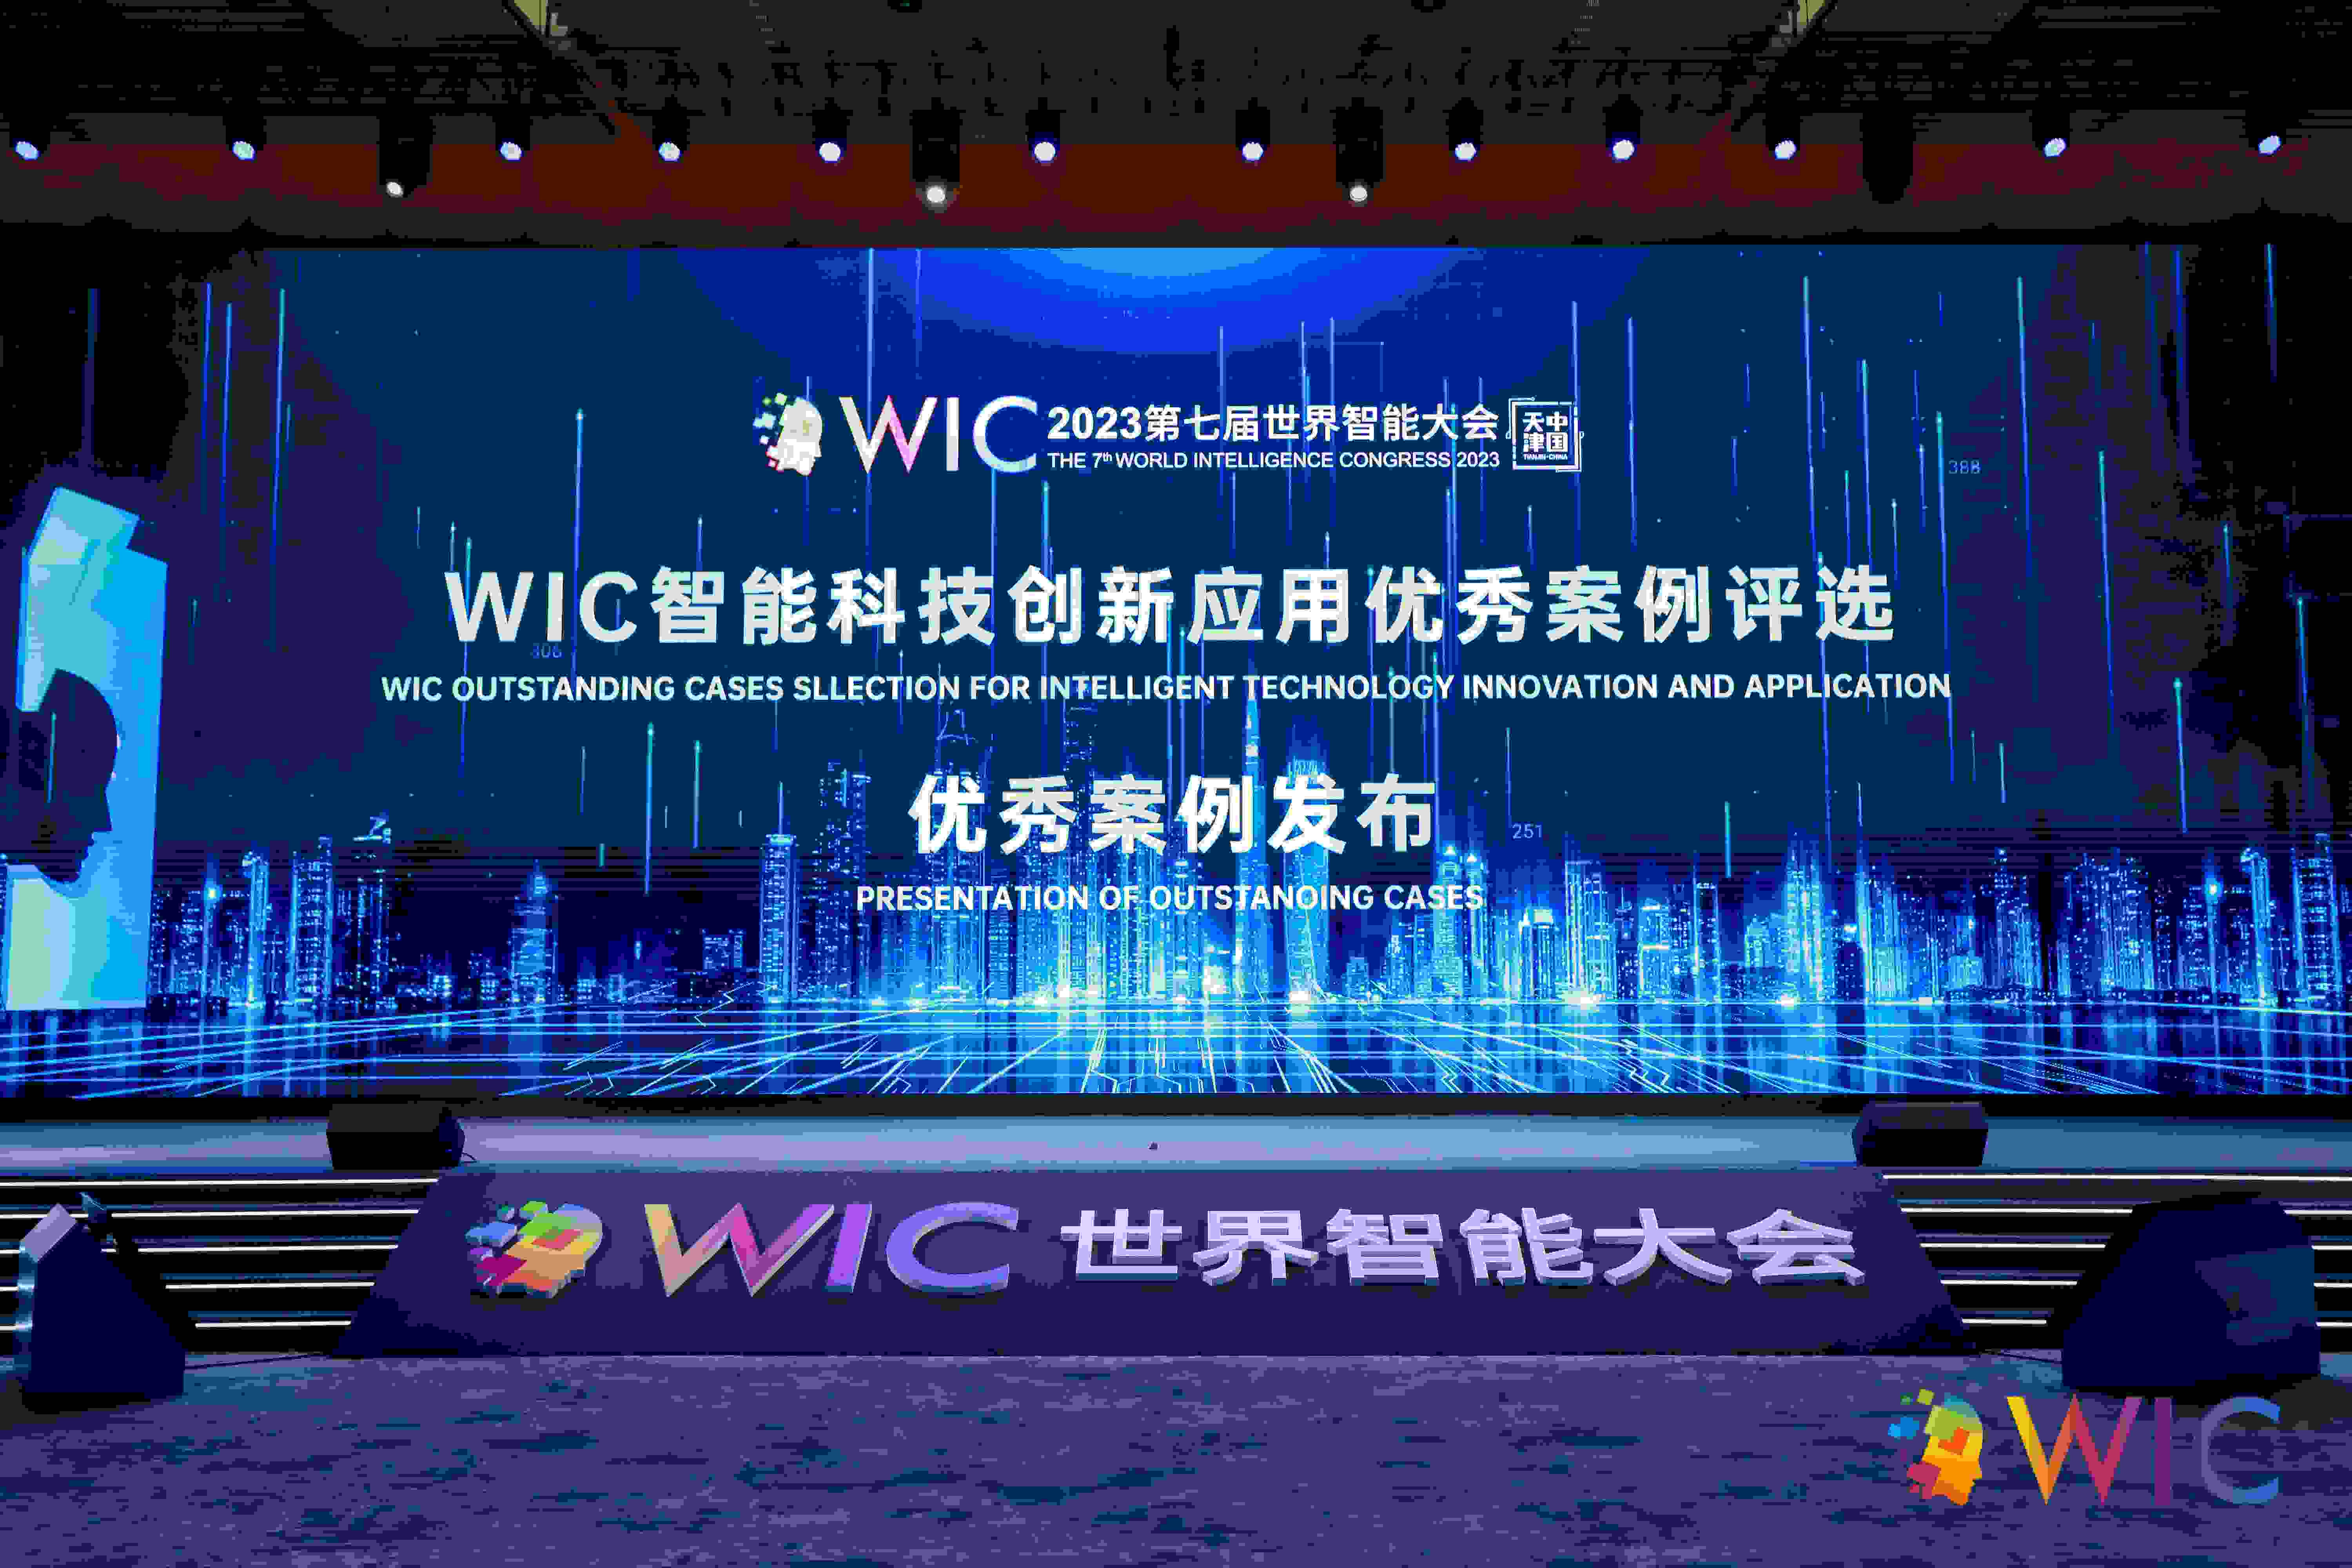 新鲜出炉！第七届世界智能大会 “WIC智能科技创新应用优秀案例” 发布